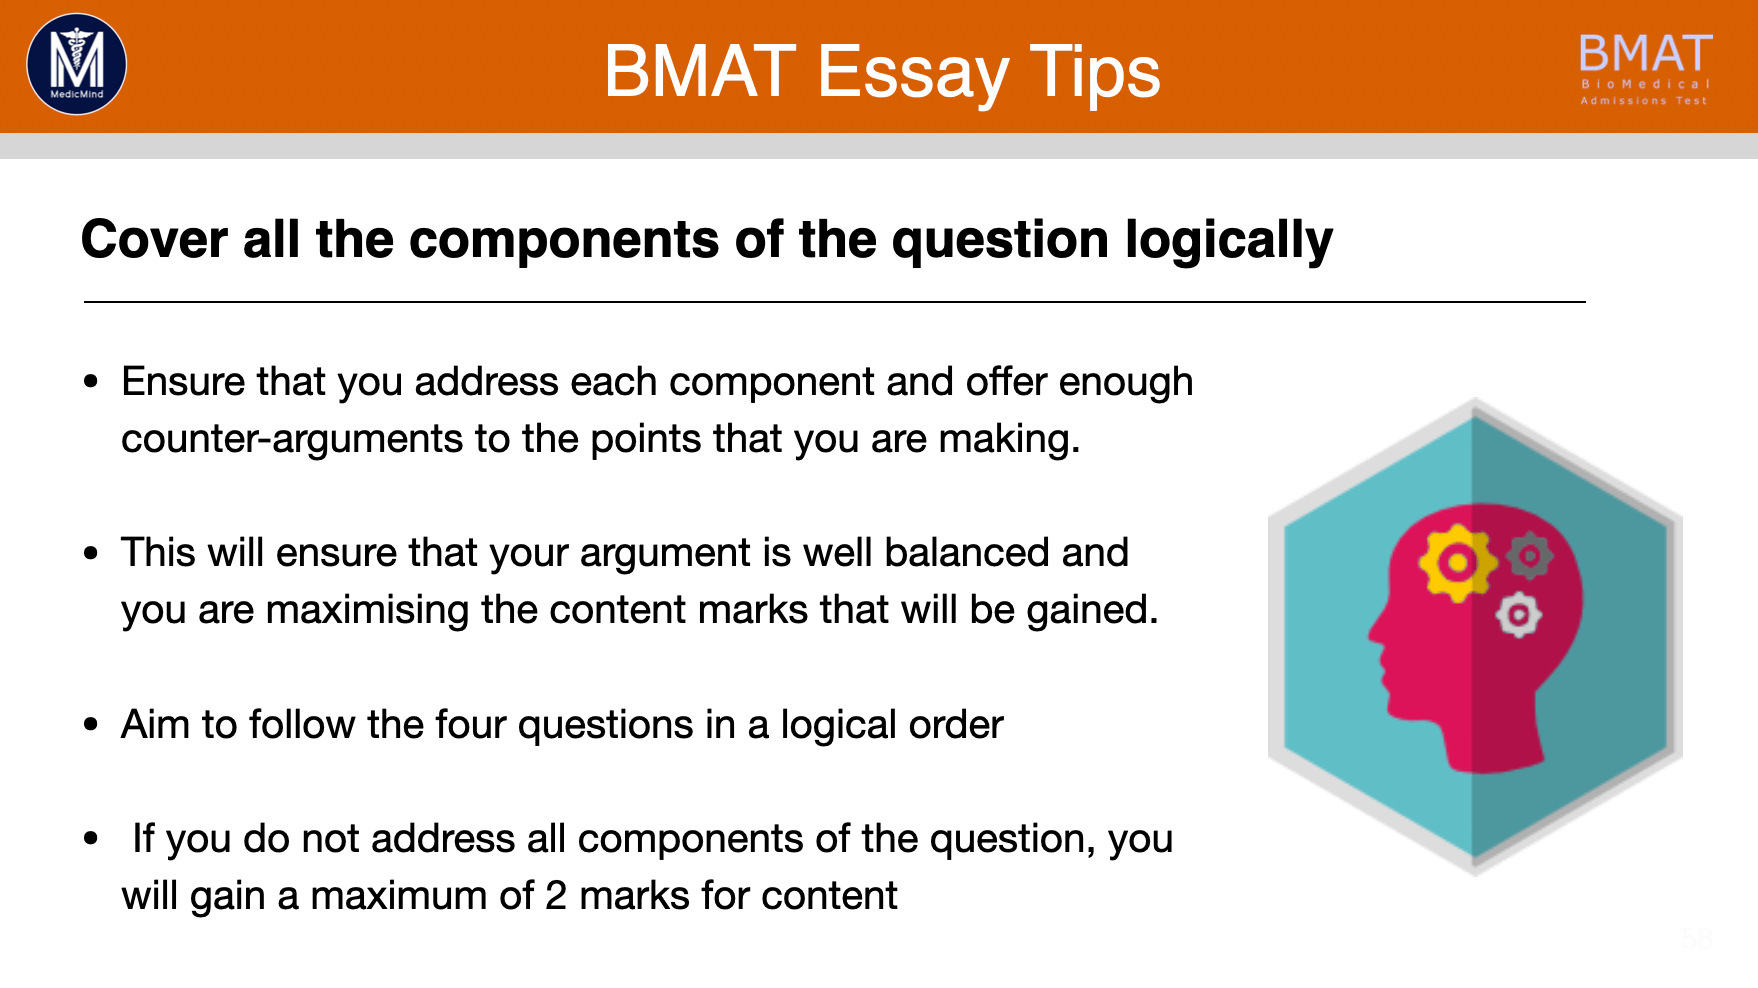 Essay Tips 1-5